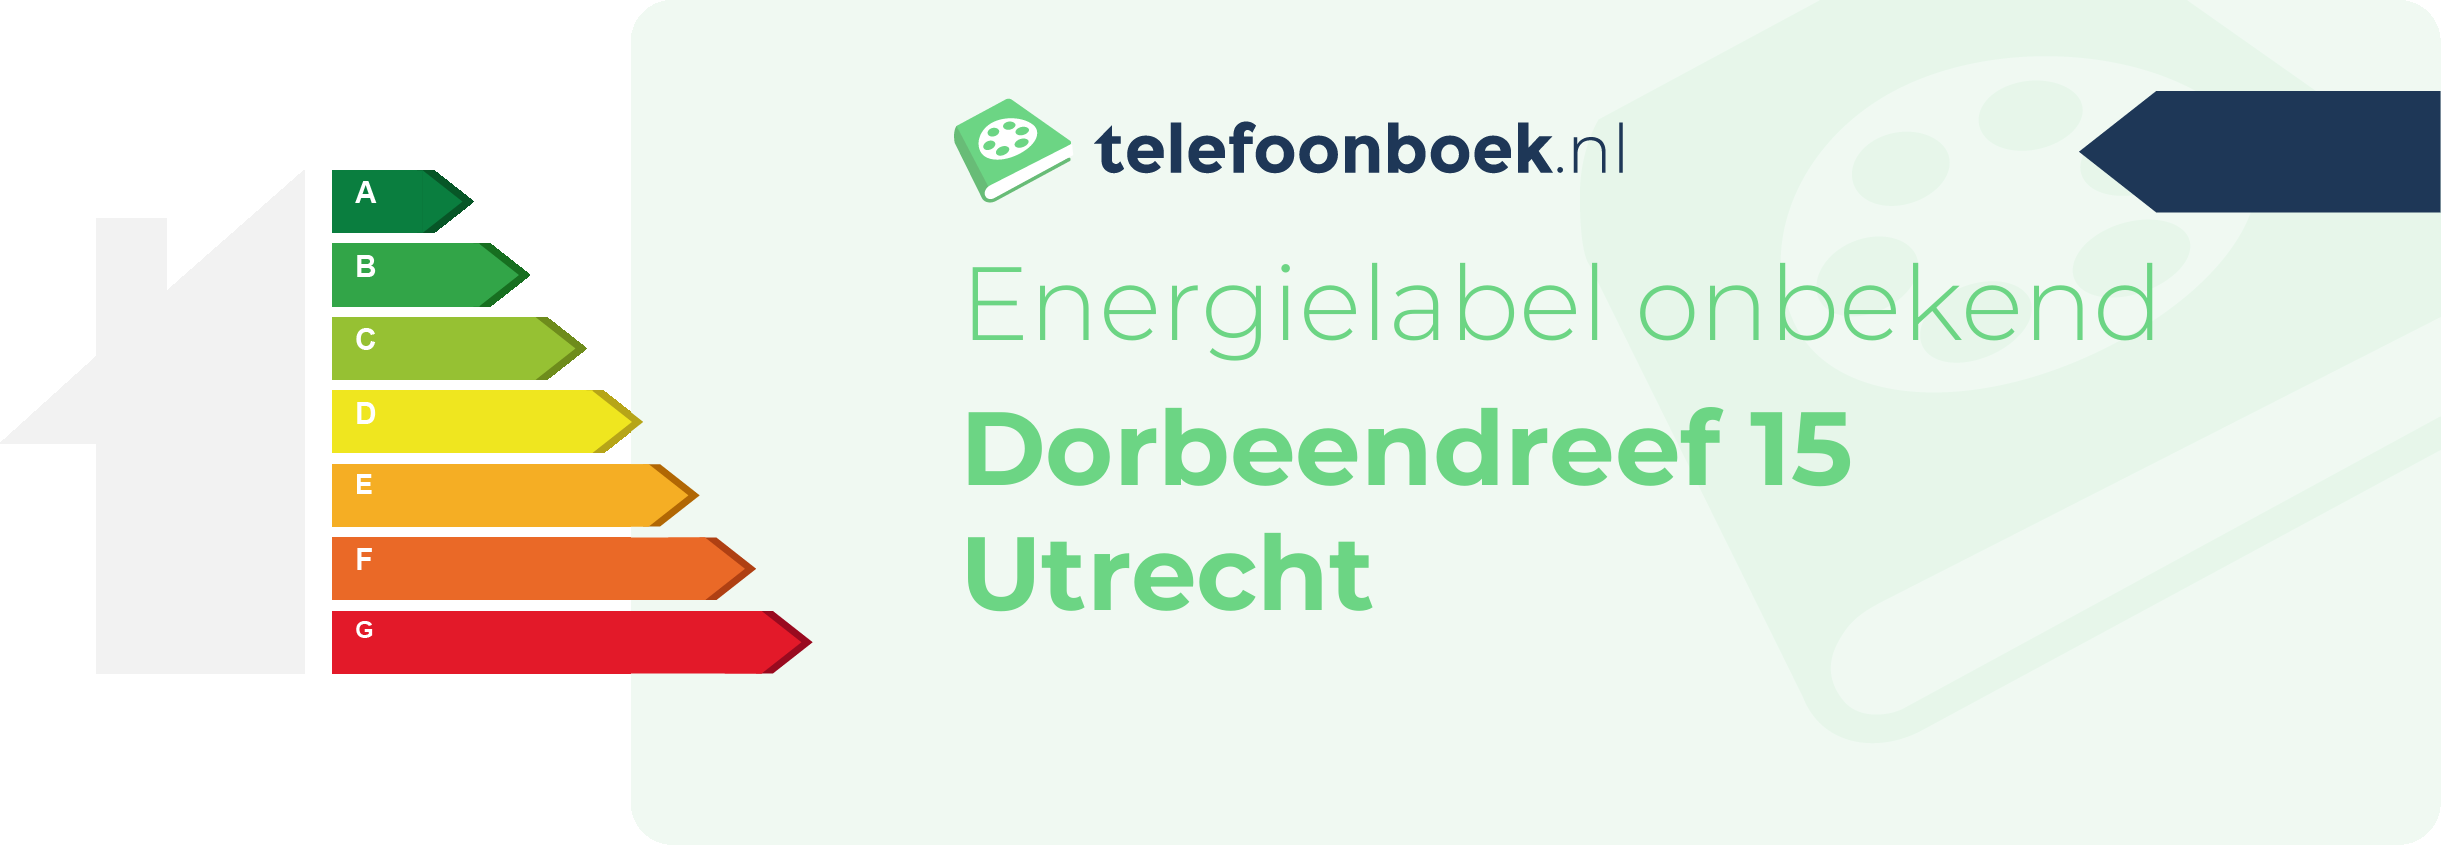 Energielabel Dorbeendreef 15 Utrecht